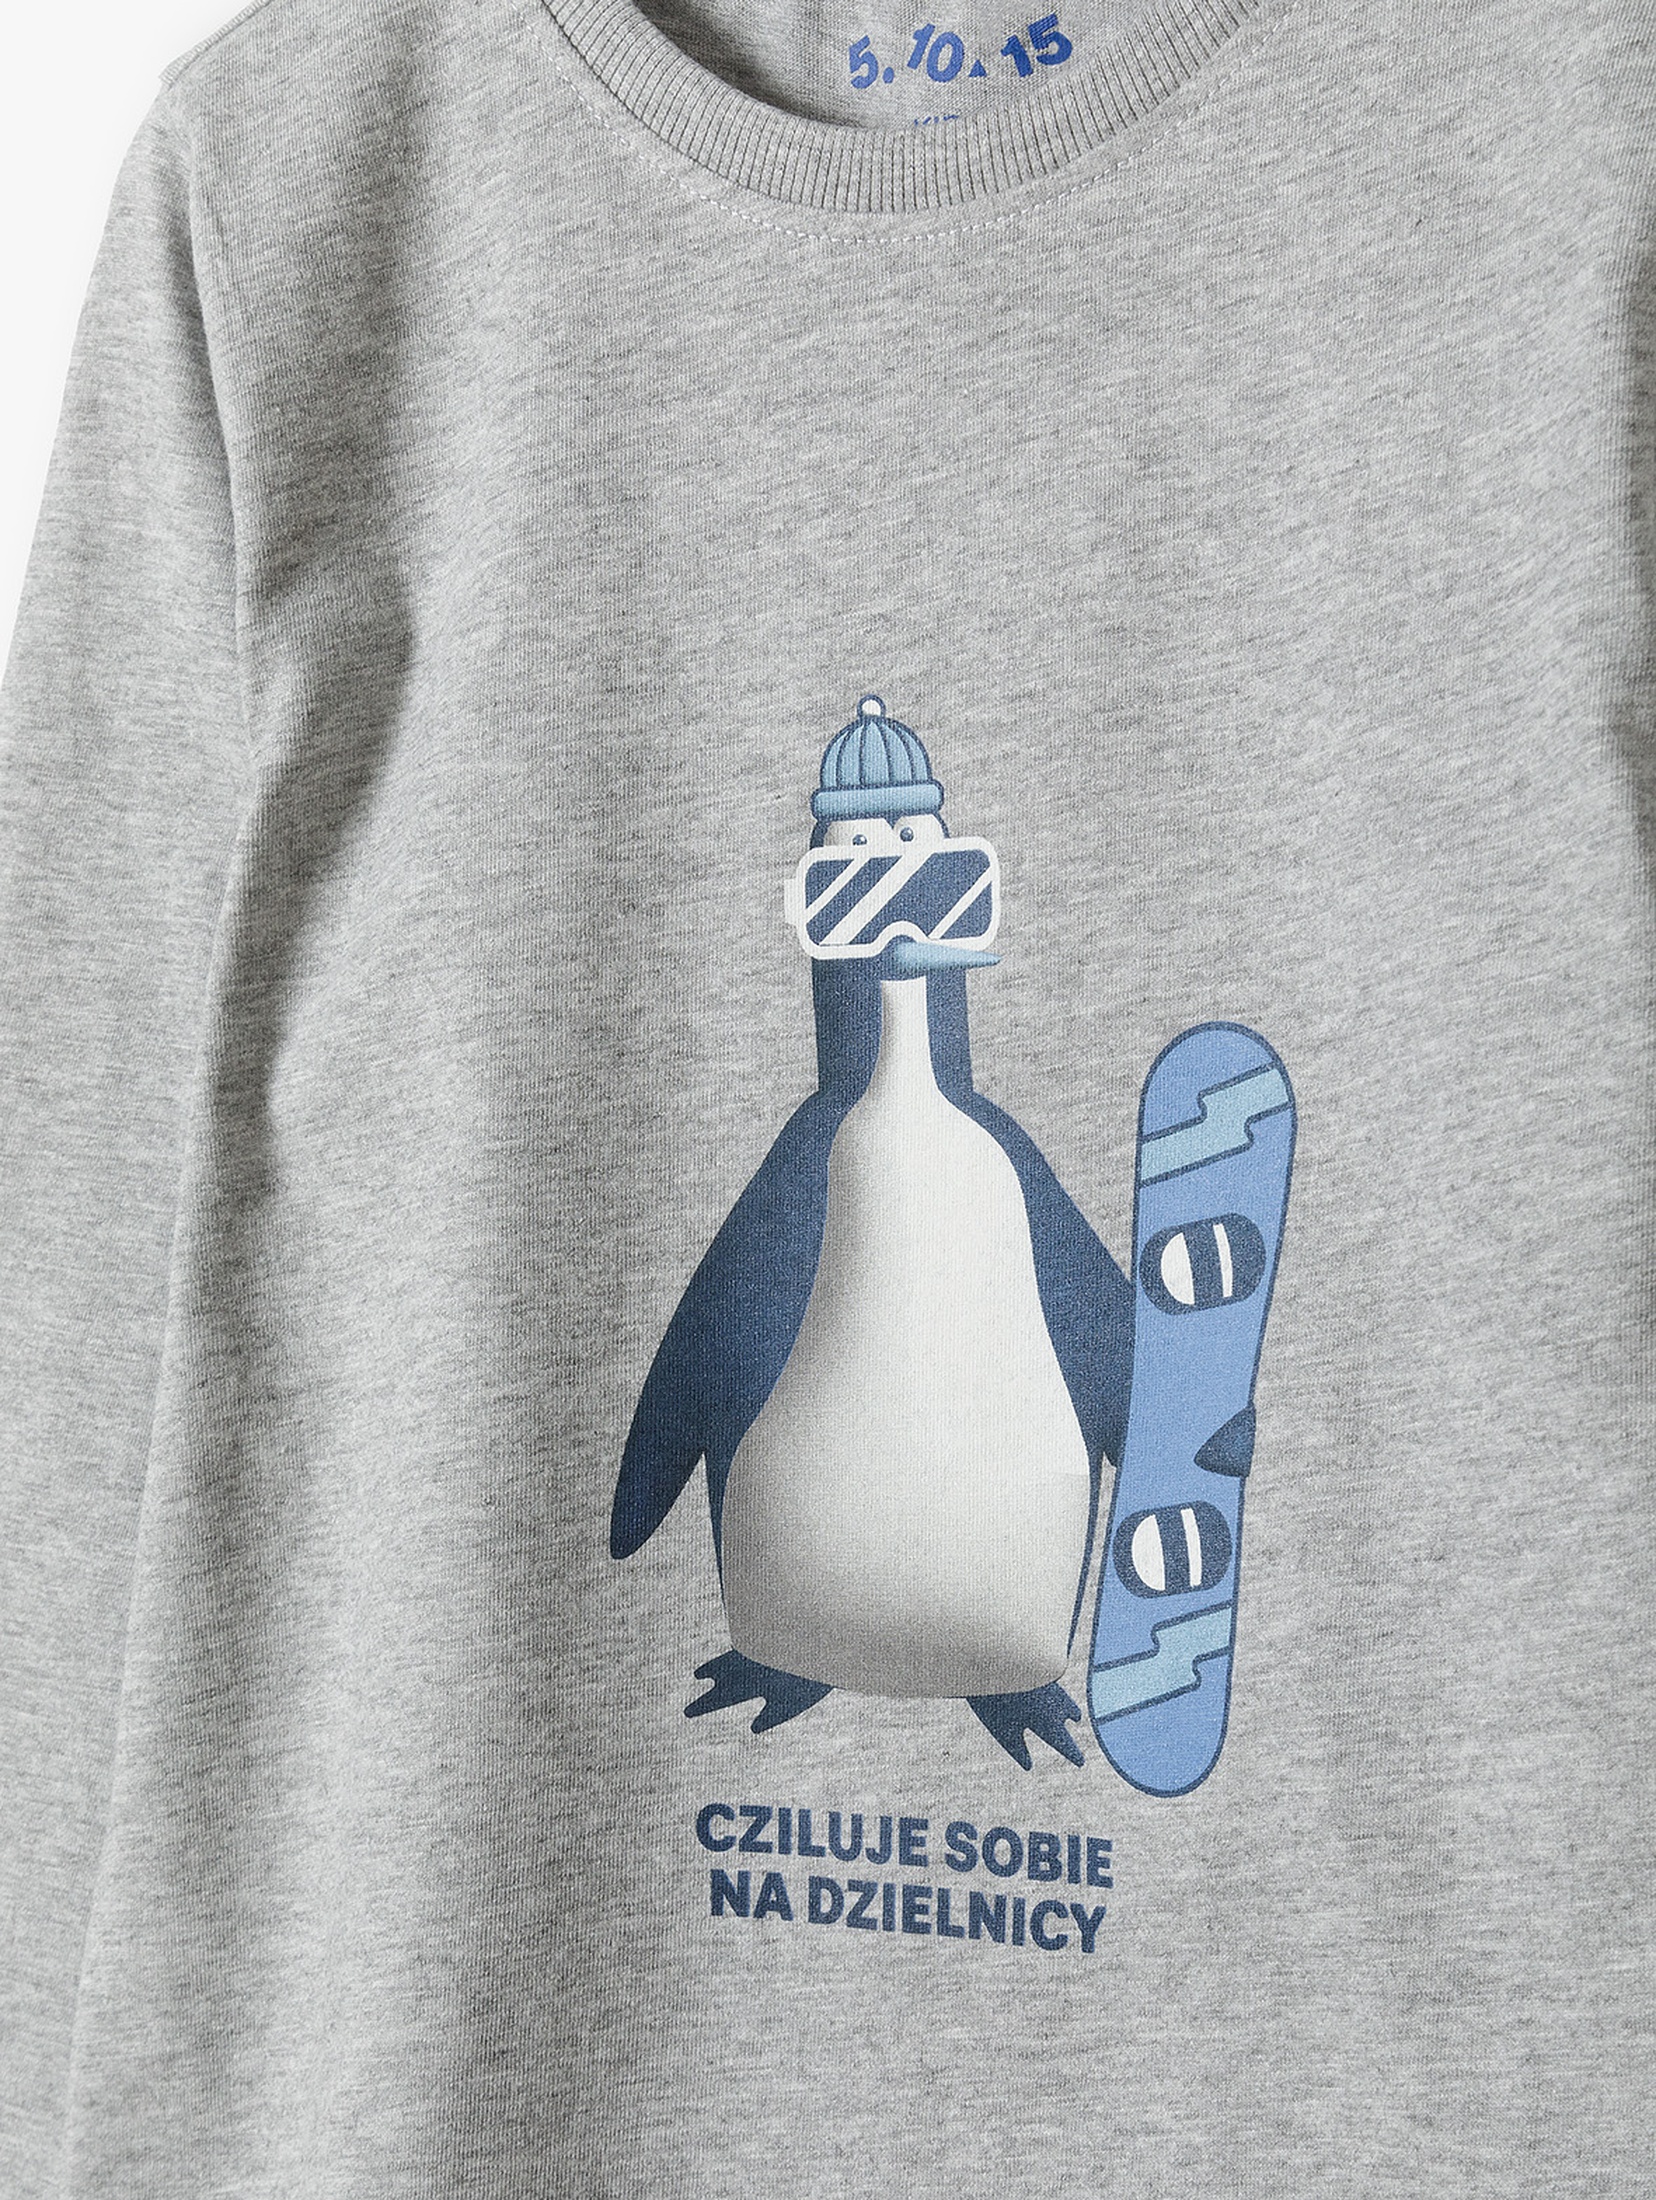 Szara bluzka dzianinowa chłopięca- pingwin